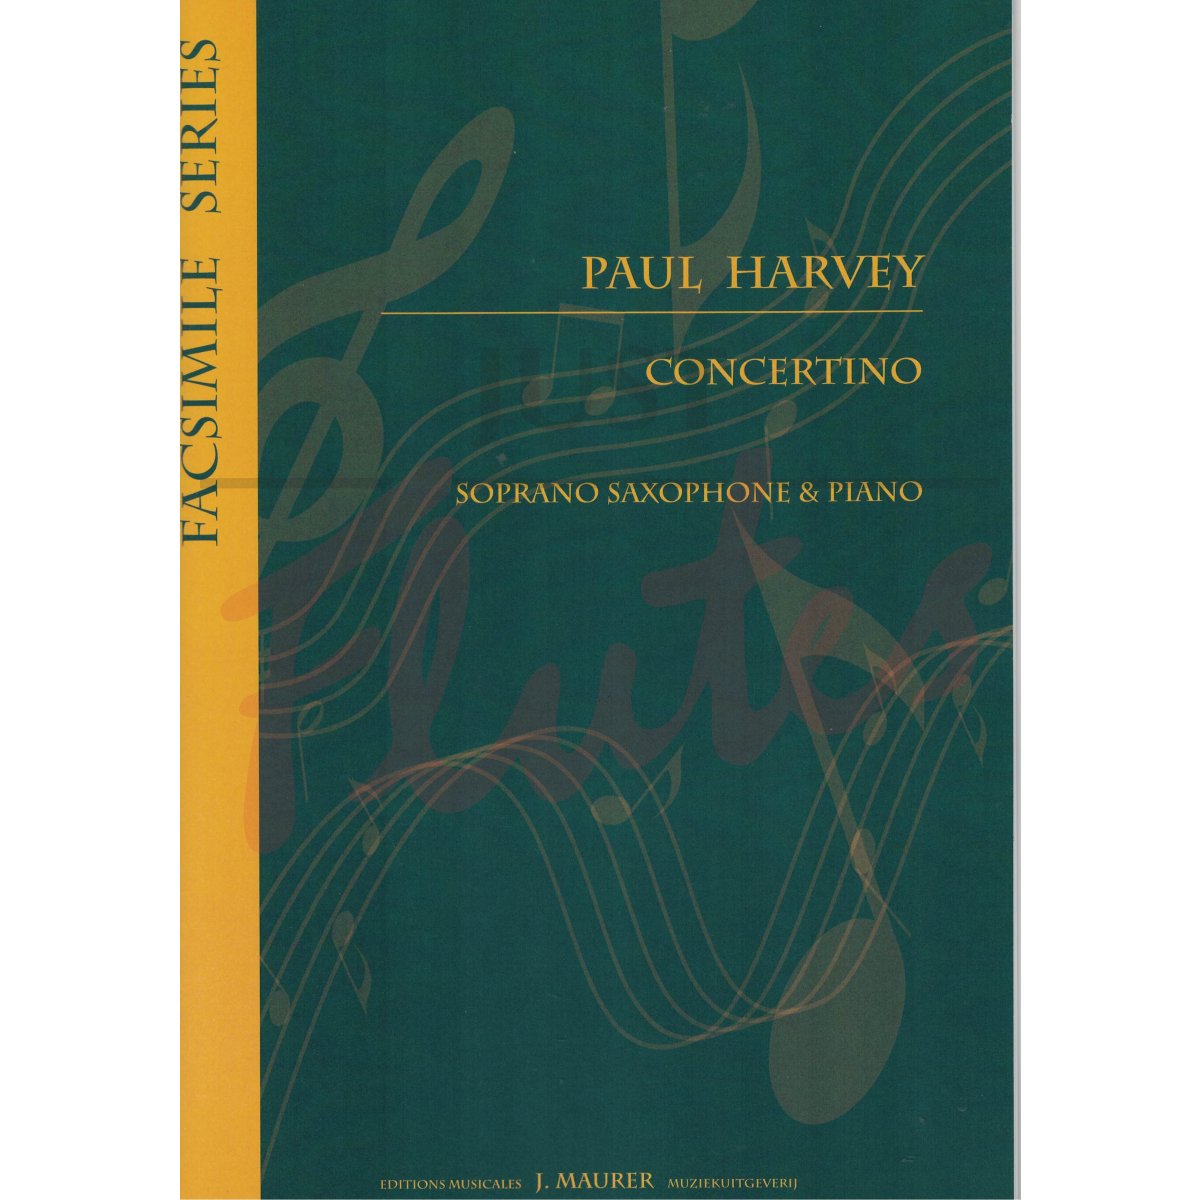 Concertino for Soprano Saxophone and Piano